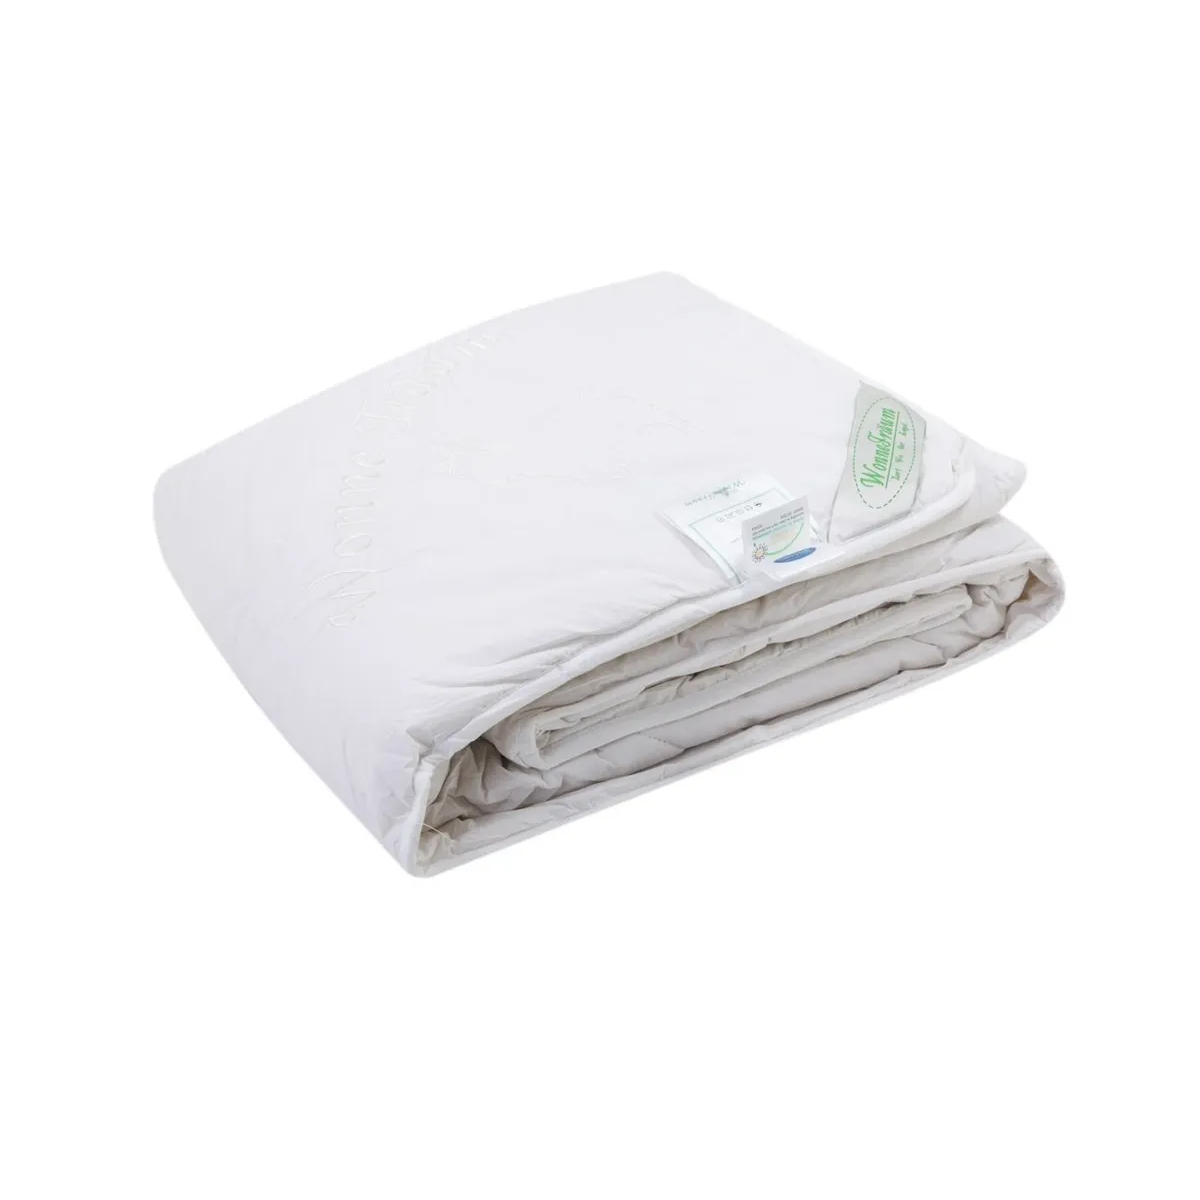 Одеяло кашемировое Wonne Traum белое 200х220 см (2709-136712) одеяло шерстяное wonne traum белое 200х220 см 2709 26241